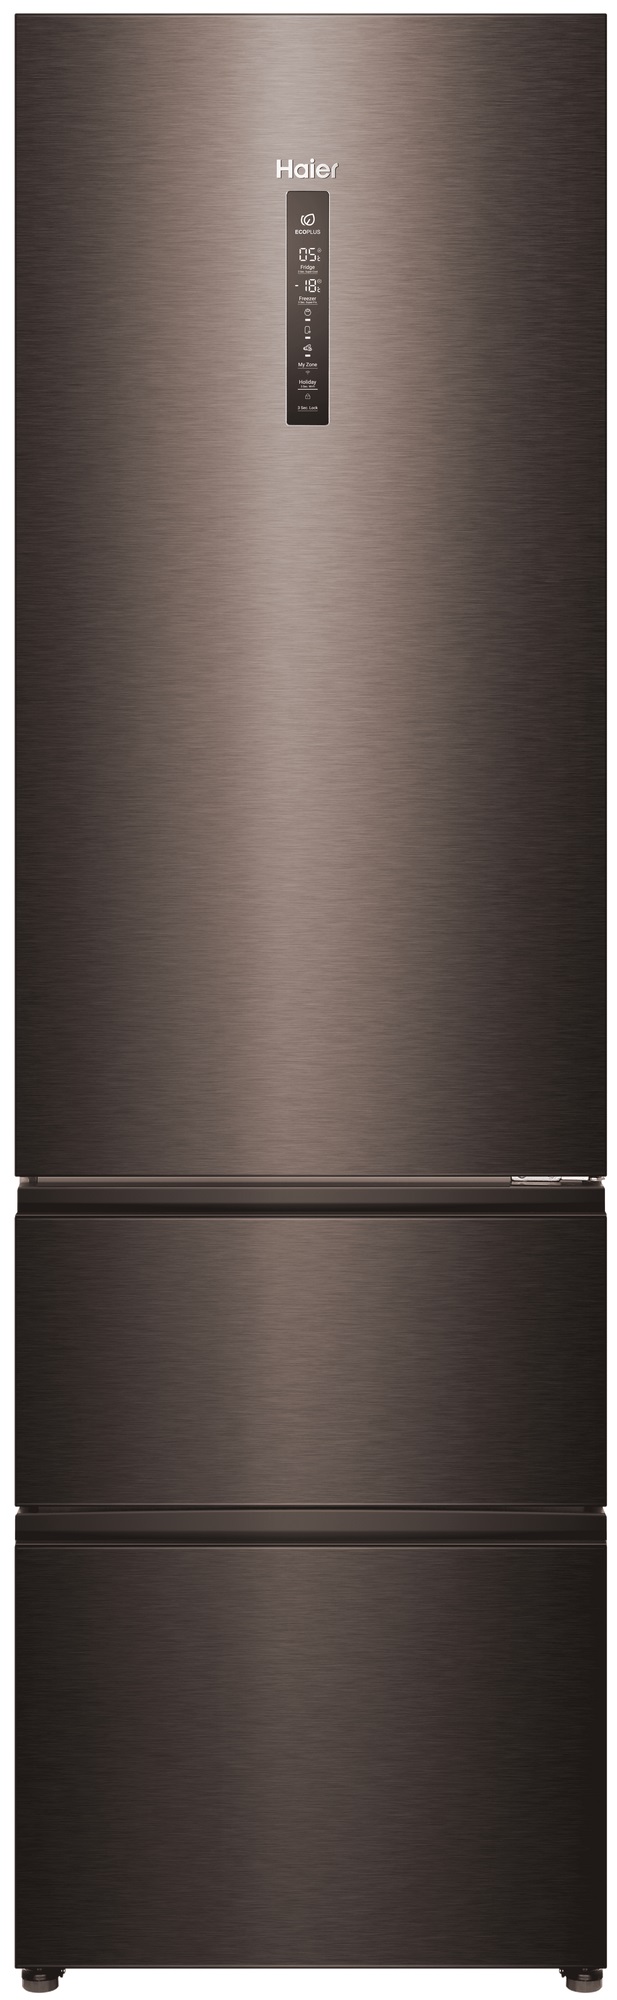 Холодильник Haier A4F739CDBGU1 серый холодильник haier a2f637cxmv серый